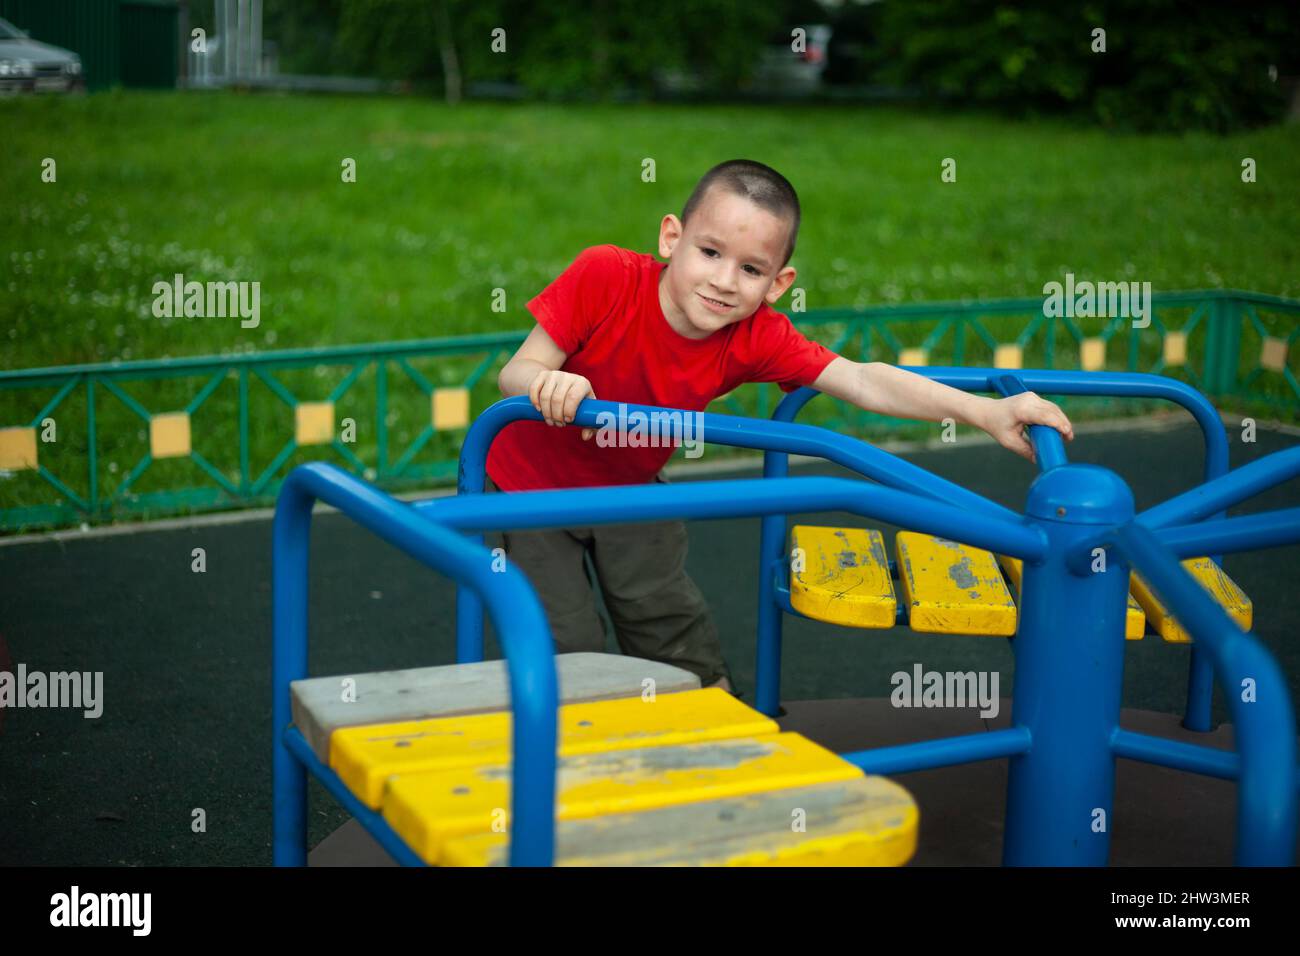 Kind im Karussell. Junge dreht sich auf dem Karussell für Kinder auf dem Spielplatz. Junior Schuljunge spielt allein. Kind in rotem T-Shirt mit kurzem Haarschnitt. Mann Stockfoto